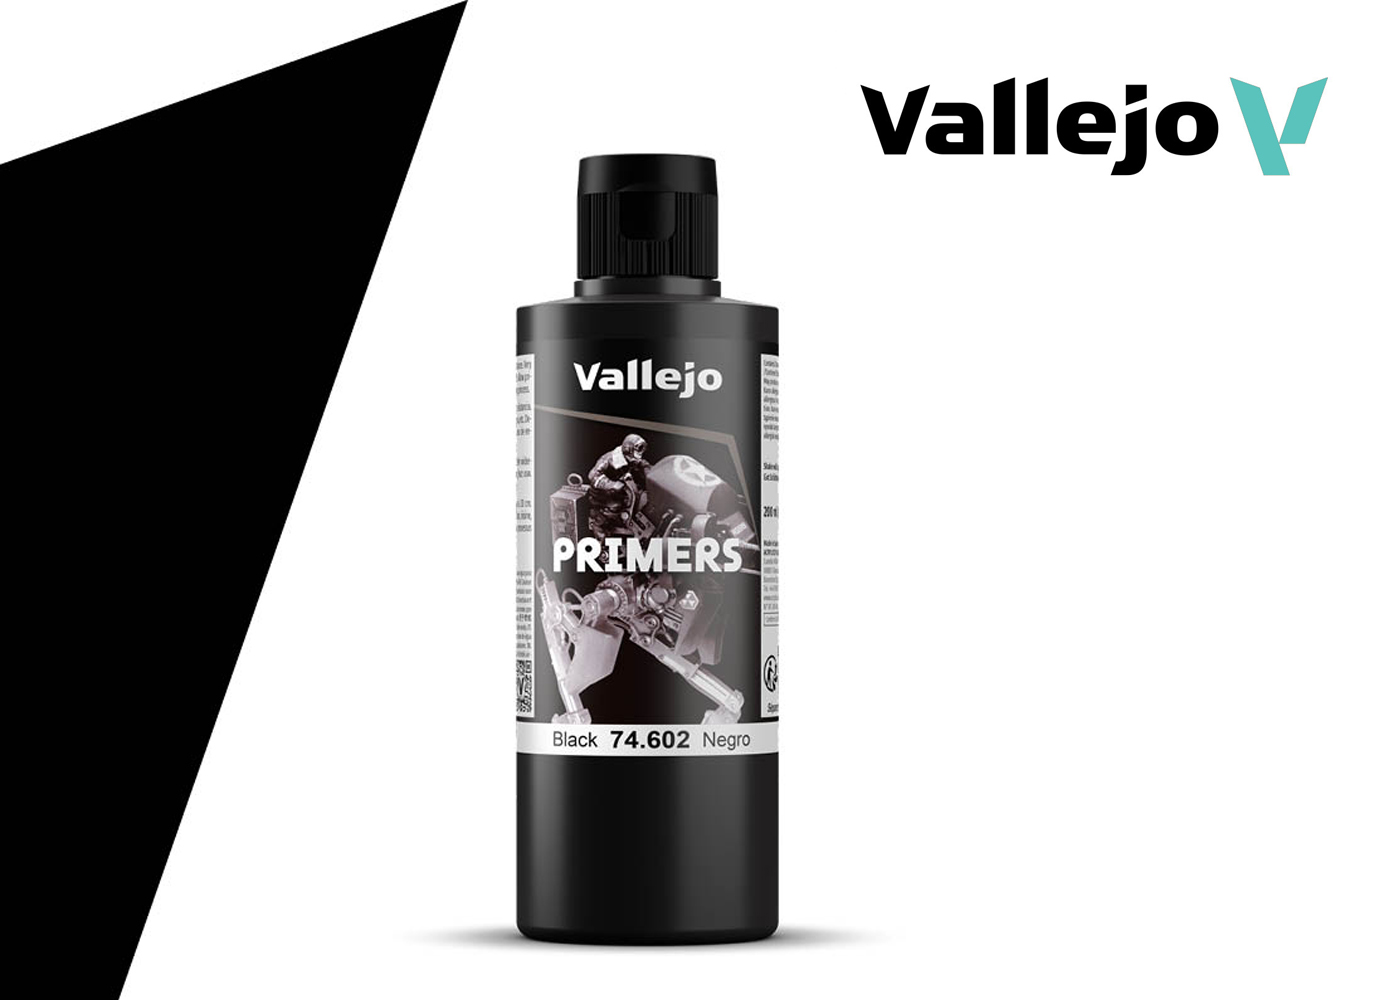 Vallejo Grey Primer Acrylic Polyurethane, 200ml